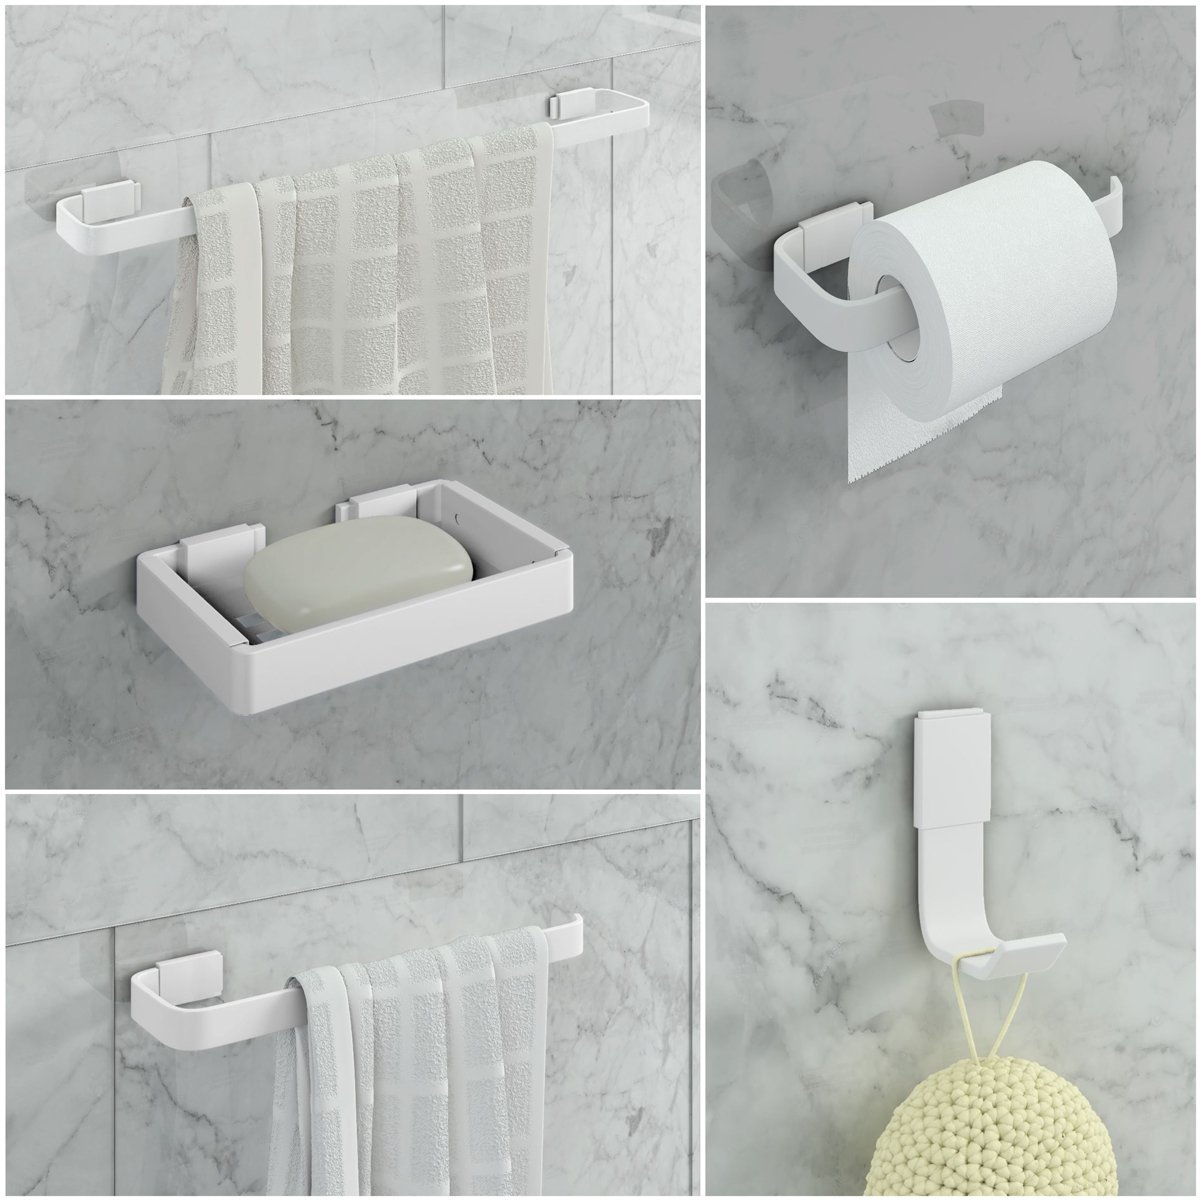 Kit de Acessórios para Banheiro 5 Peças Stander:branco